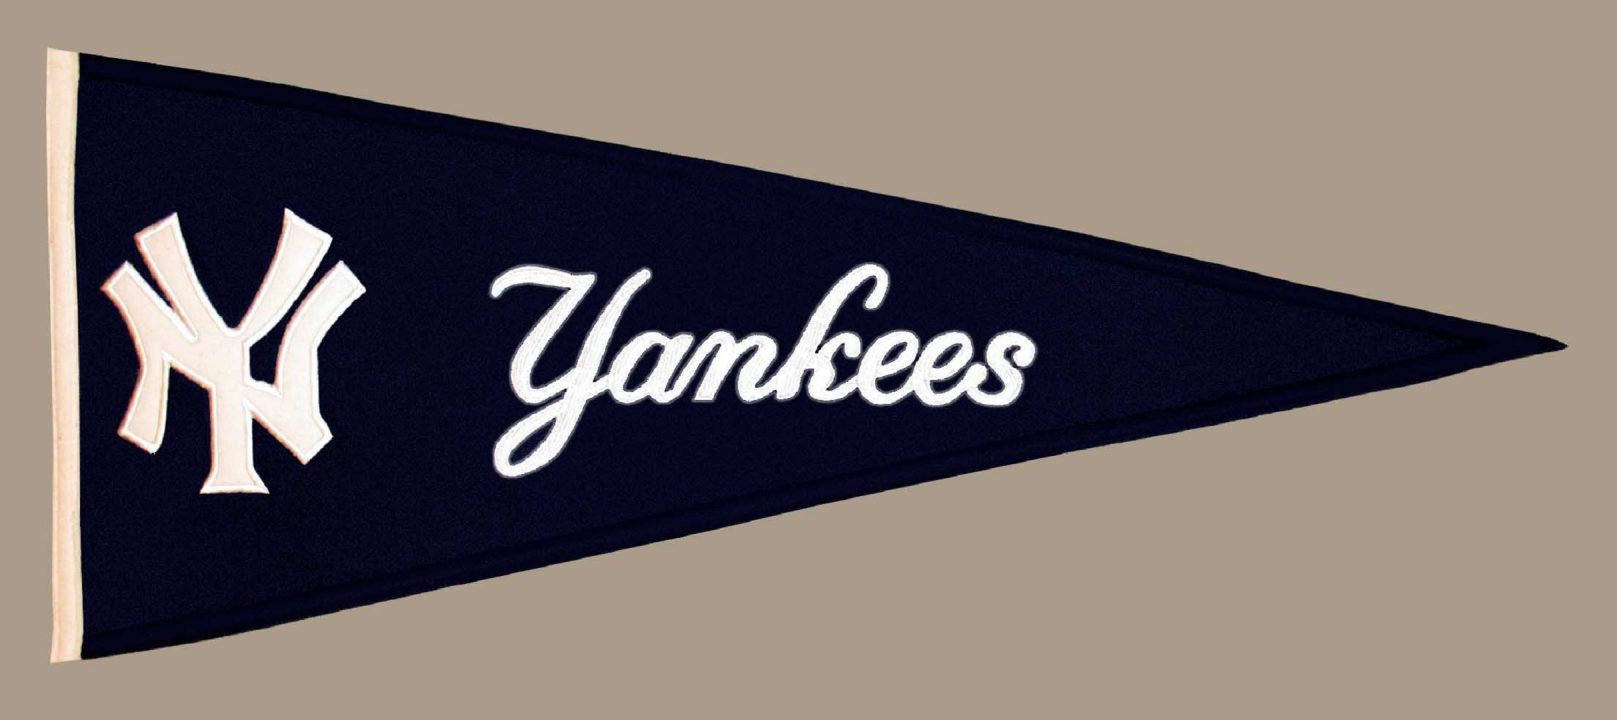 New York Yankees Wallpapers